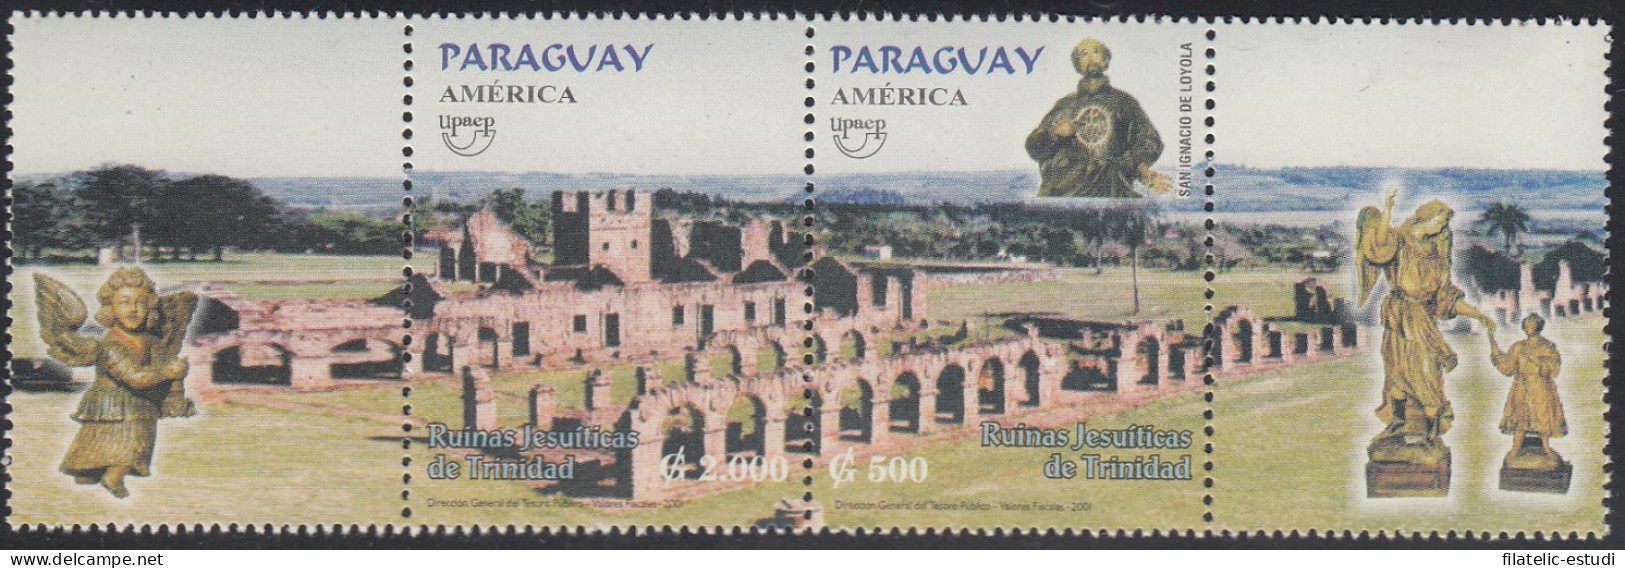 Upaep Paraguay 2839/40 2001 Ruinas Jesuíticas De Trinidad MNH - Altri - America